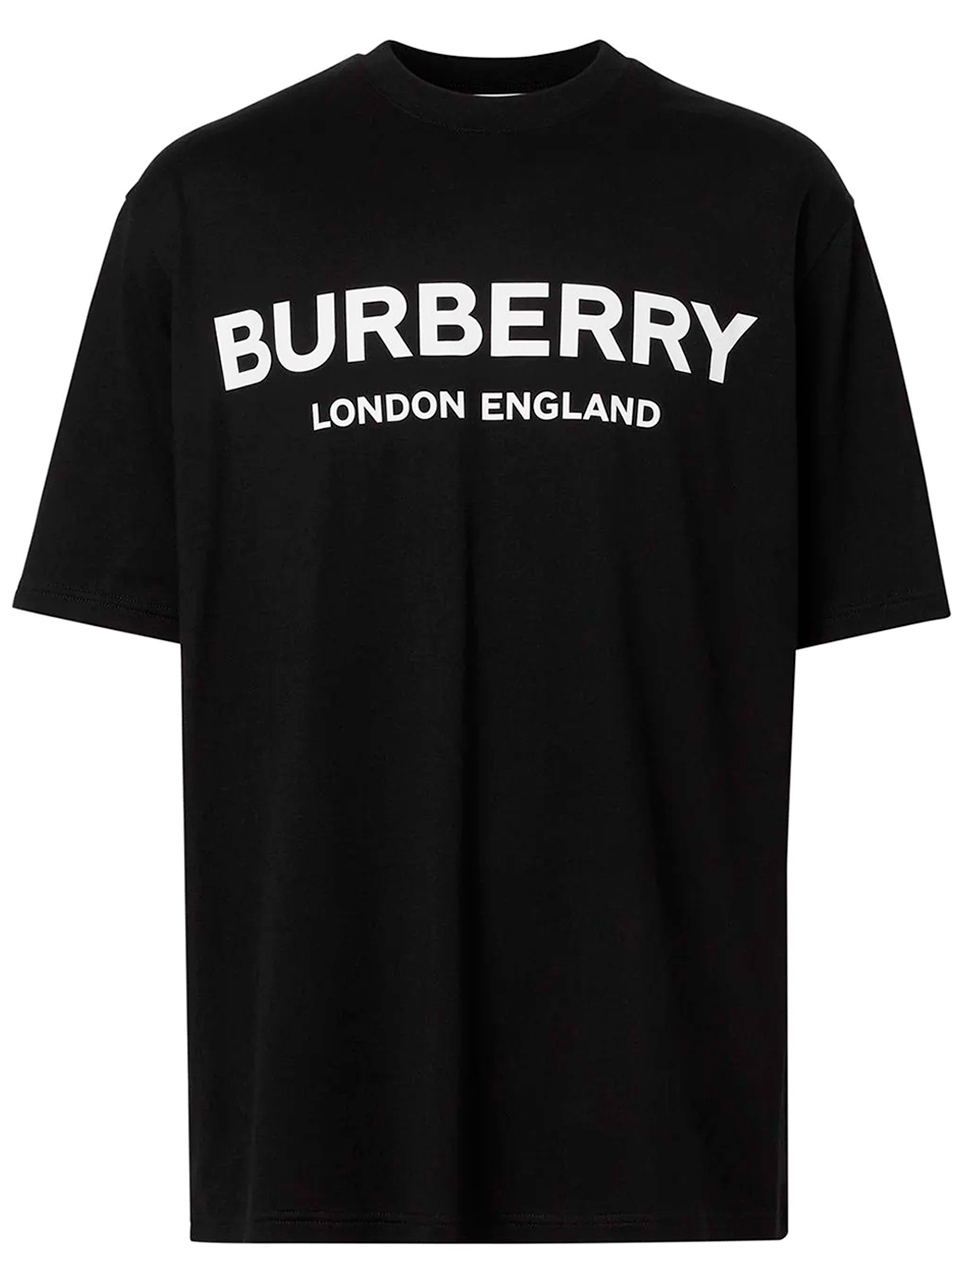 Imagem de: Camiseta Burberry Preta com Estampa